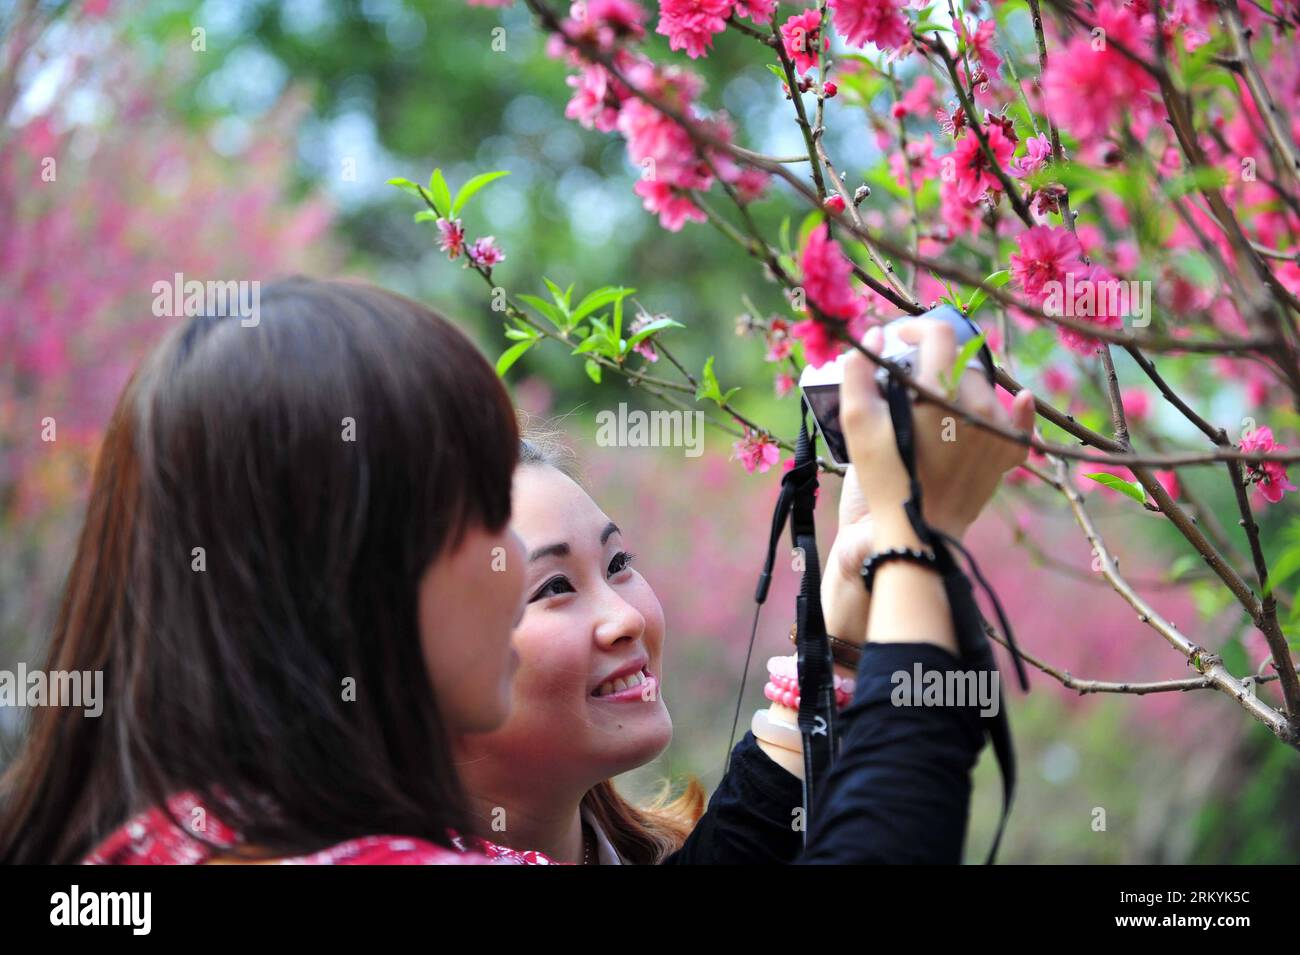 Bildnummer : 59234708 Datum : 18.02.2013 Copyright : imago/Xinhua (130218) -- GUANGZHOU, 18 février 2013 (Xinhua) -- deux filles observent des fleurs de pêche à la montagne Baiyun à Guangzhou, capitale de la province du Guangdong du sud de la Chine, 18 février 2013. Les fleurs de pêche à Taohuajian de la montagne ont fleuri et ont attiré de nombreux visiteurs. (Xinhua/Chen Yehua) (zkr) CHINA-GUANGZHOU-PEACH BLOSSOM(CN) PUBLICATIONxNOTxINxCHN Gesellschaft Pflanze Blüte Pfirsichblüte Park Besucher x0x xdd 2013 quer 59234708 Date 18 02 2013 Copyright Imago XINHUA Guangzhou février 18 2013 XINHUA deux filles regarder les fleurs de pêche À Bai Banque D'Images